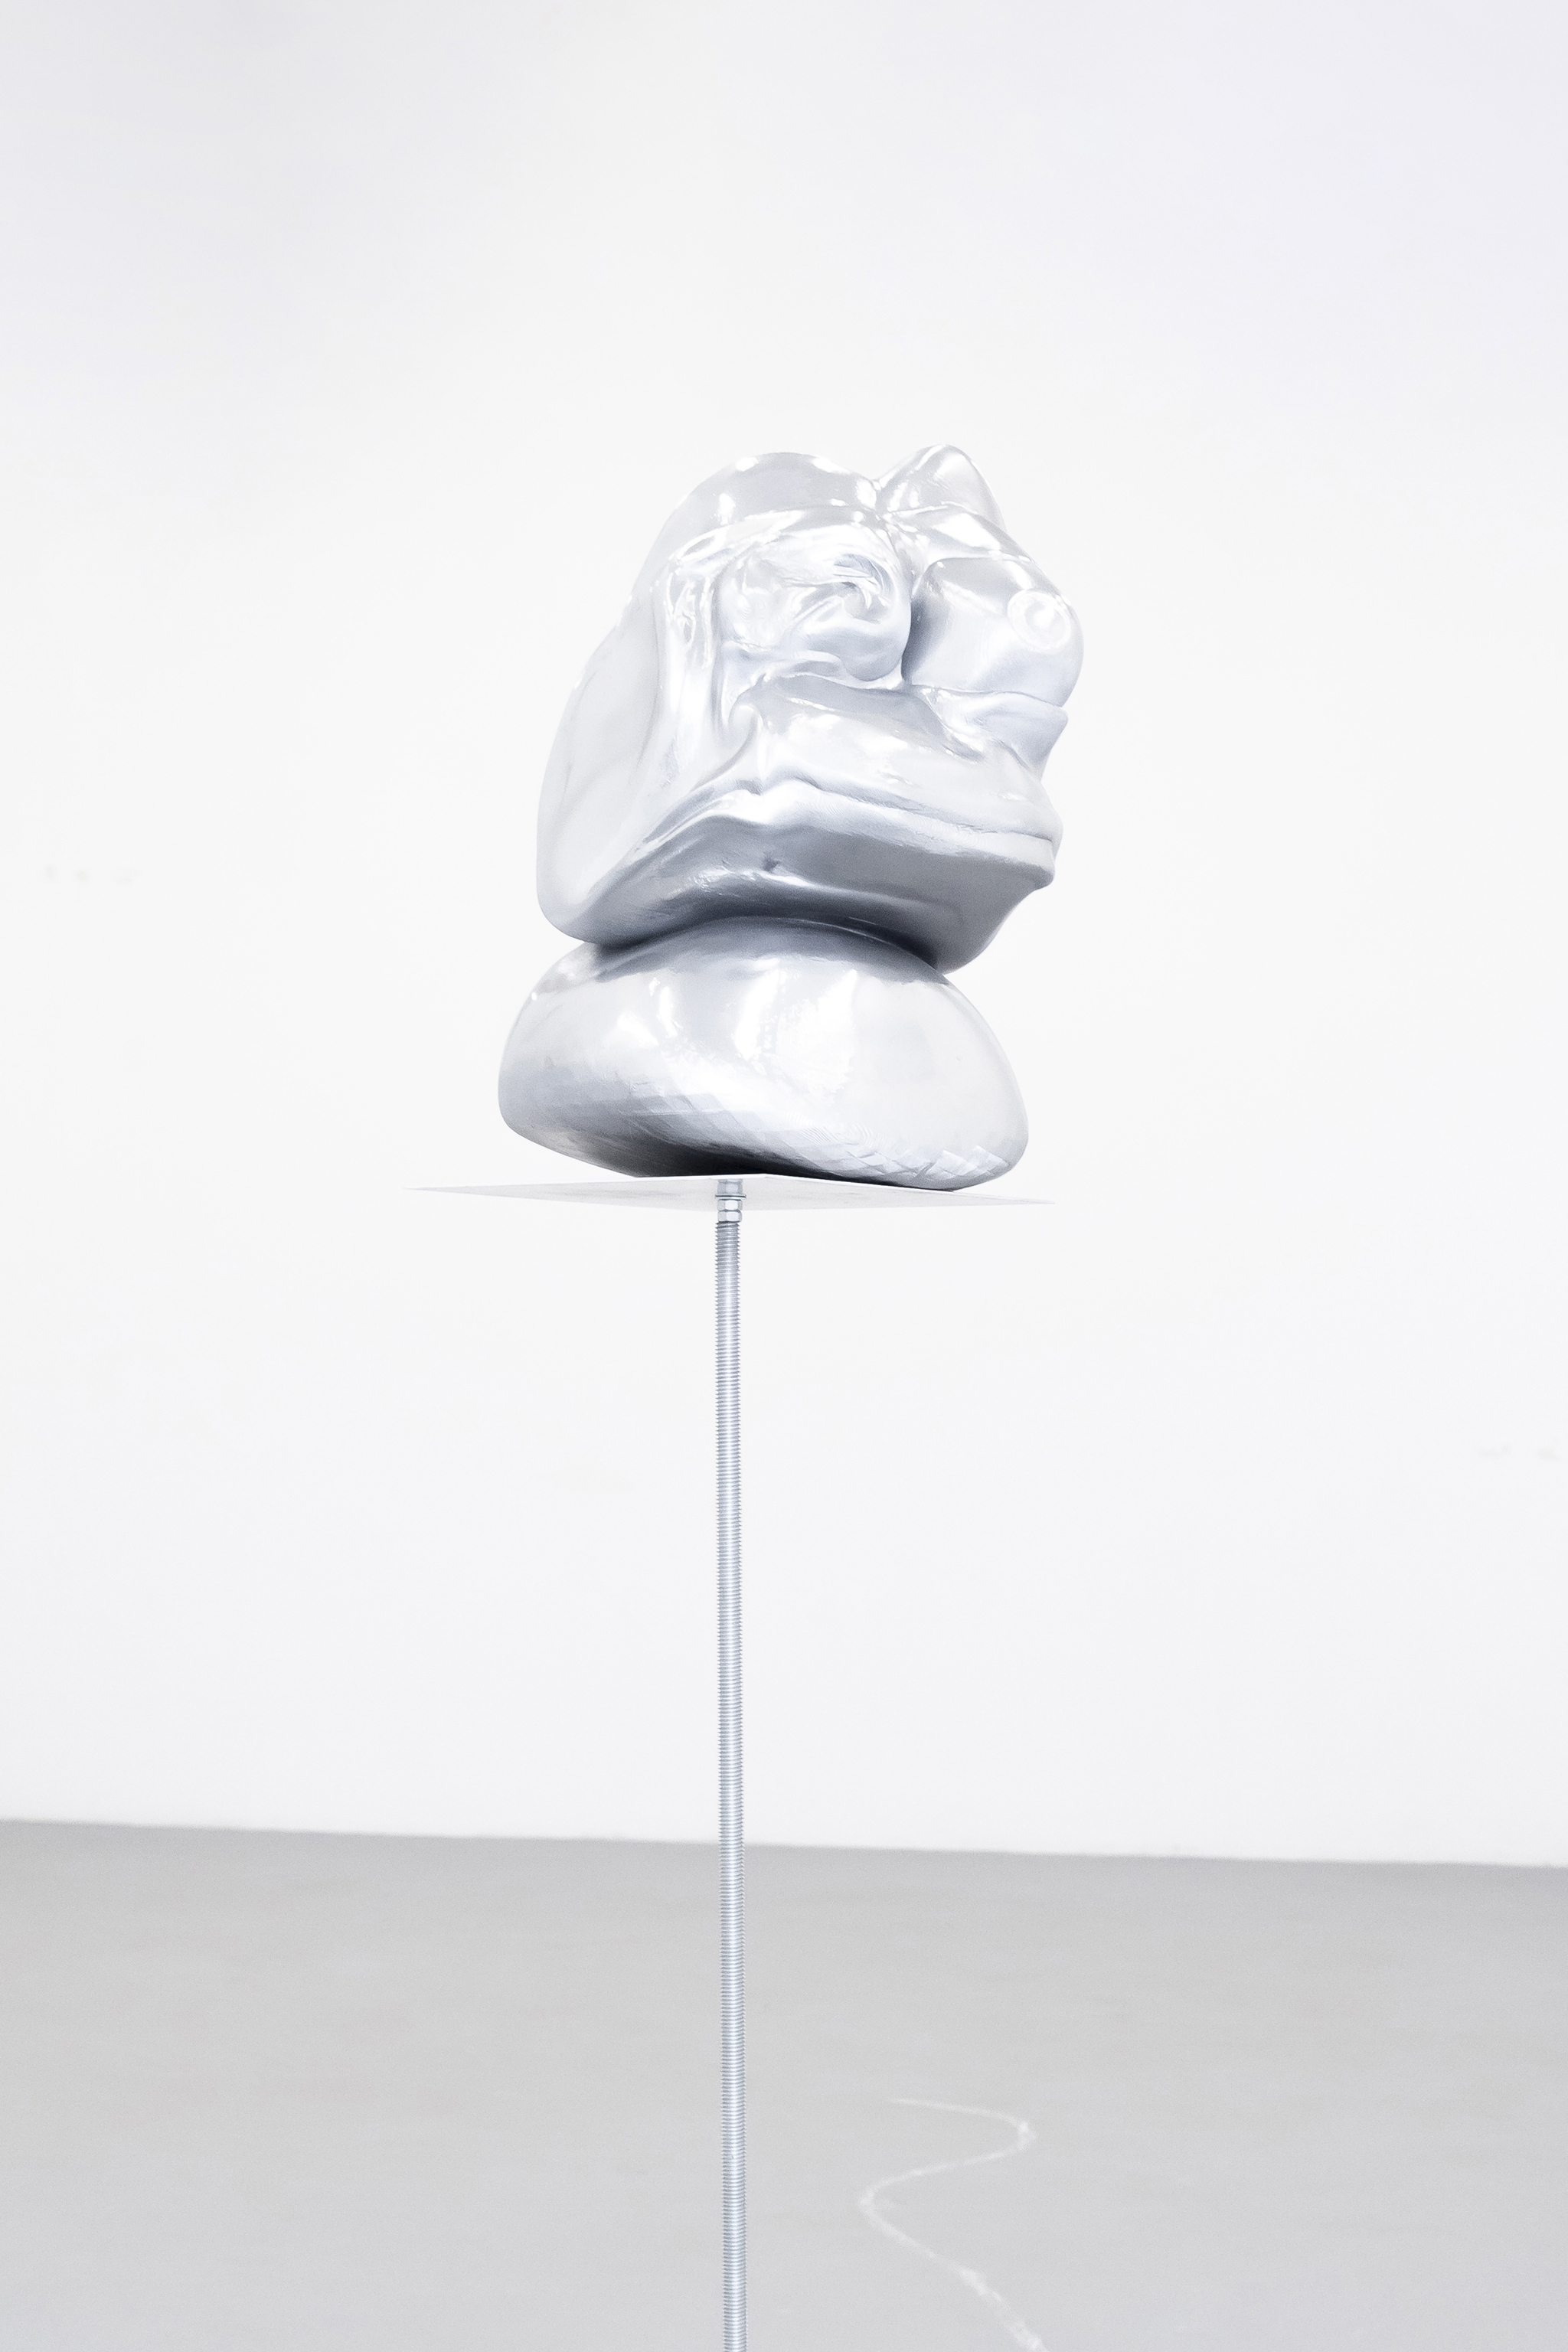 Pepe.obj, object: 3D print, chrome paint, 35x24x28 cm, 2023.